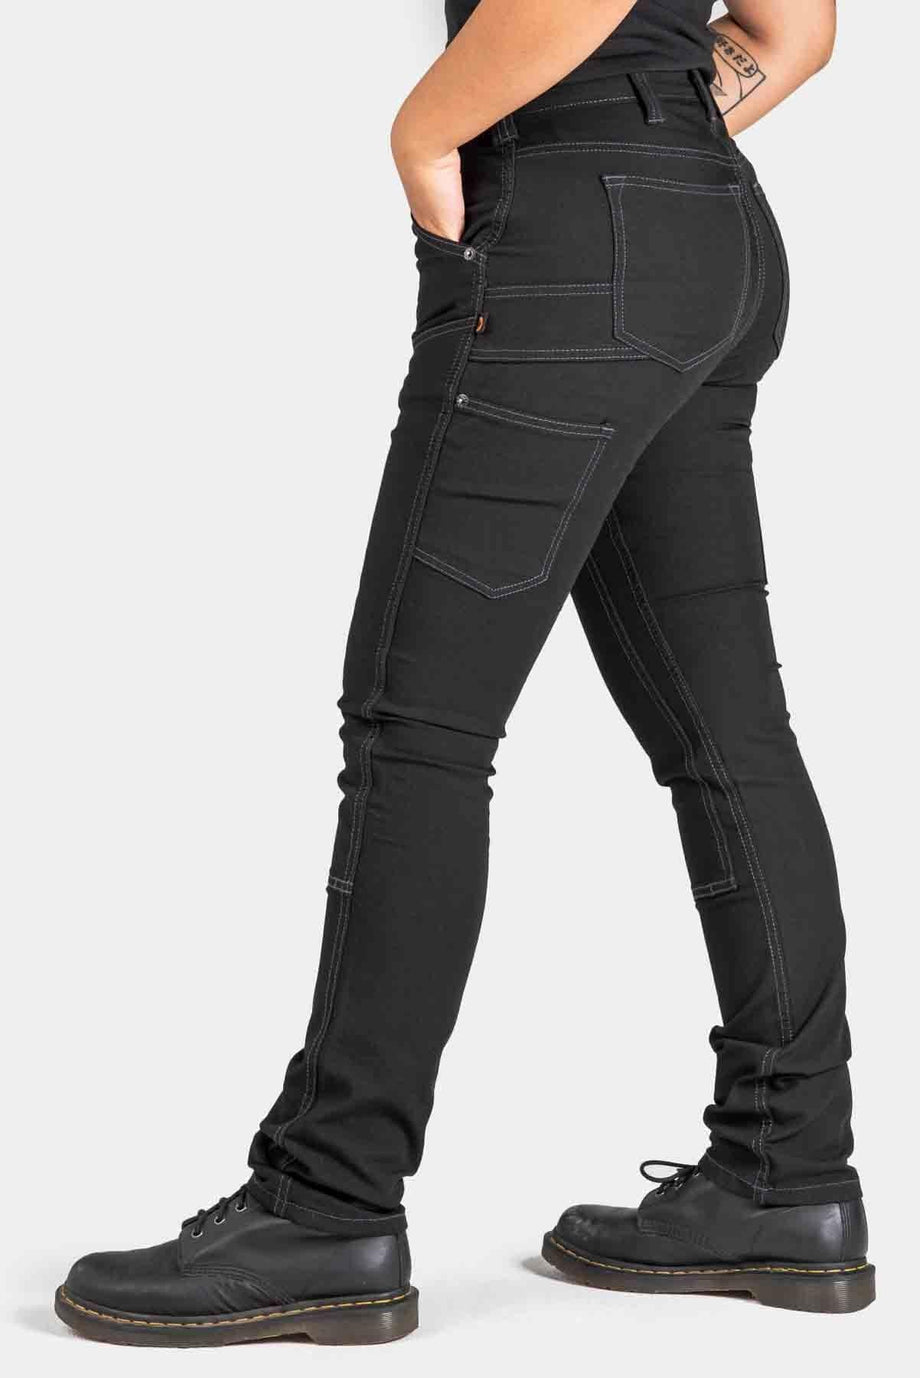 Dovetail Women's Jeans Workwear Maven Slim Powerflex Indigo 16x28